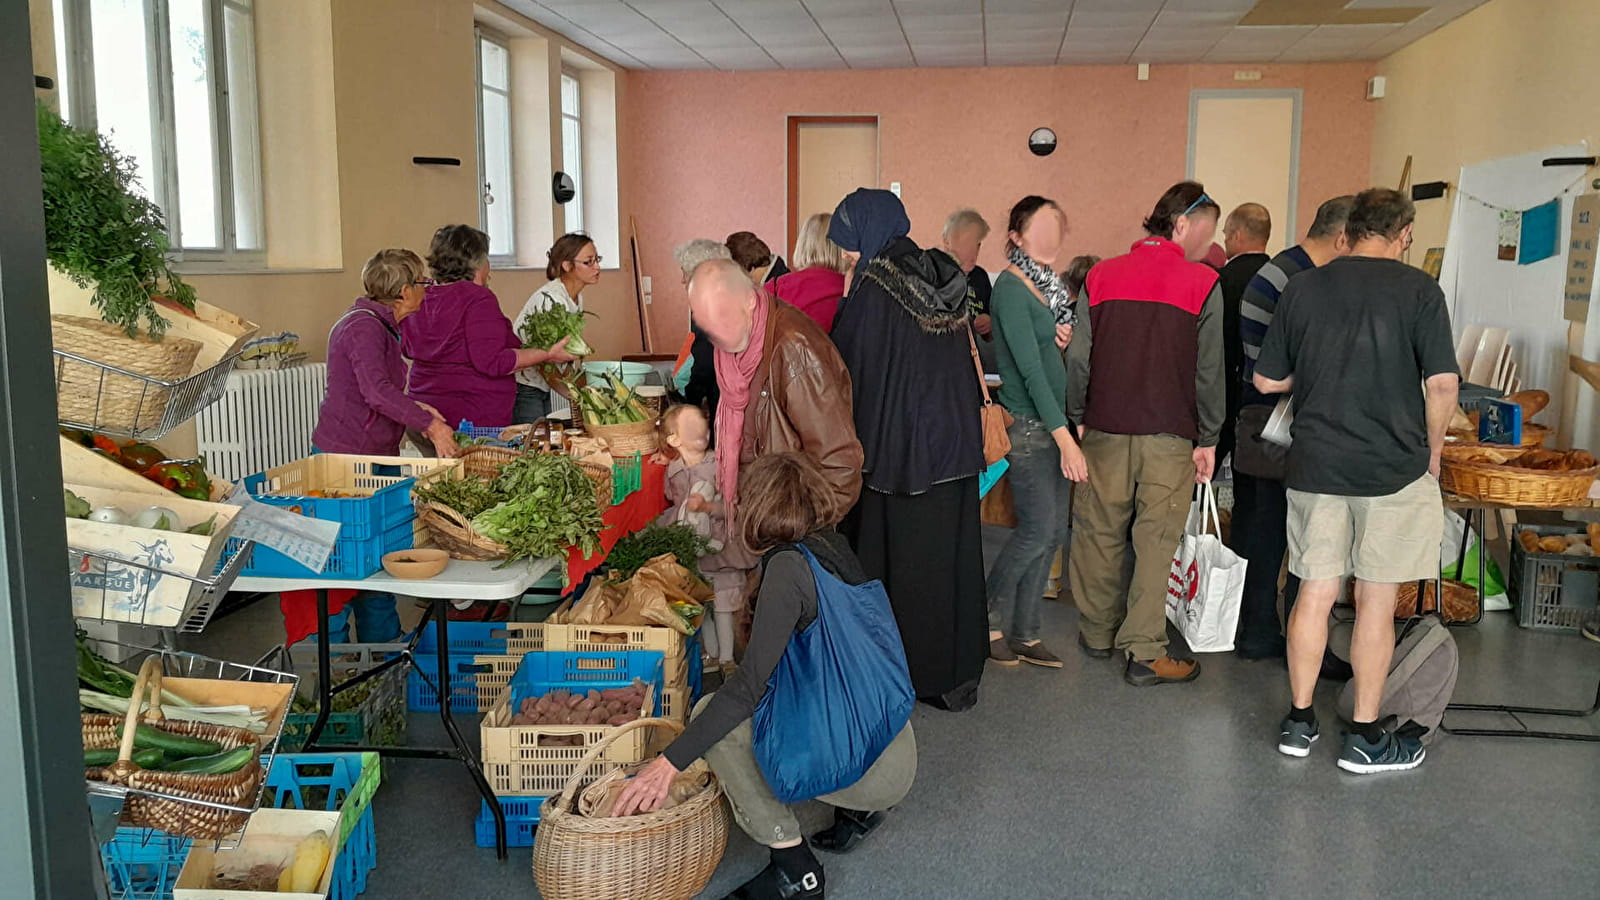 Le P'tit marché bio (Der kleine Biomarkt)